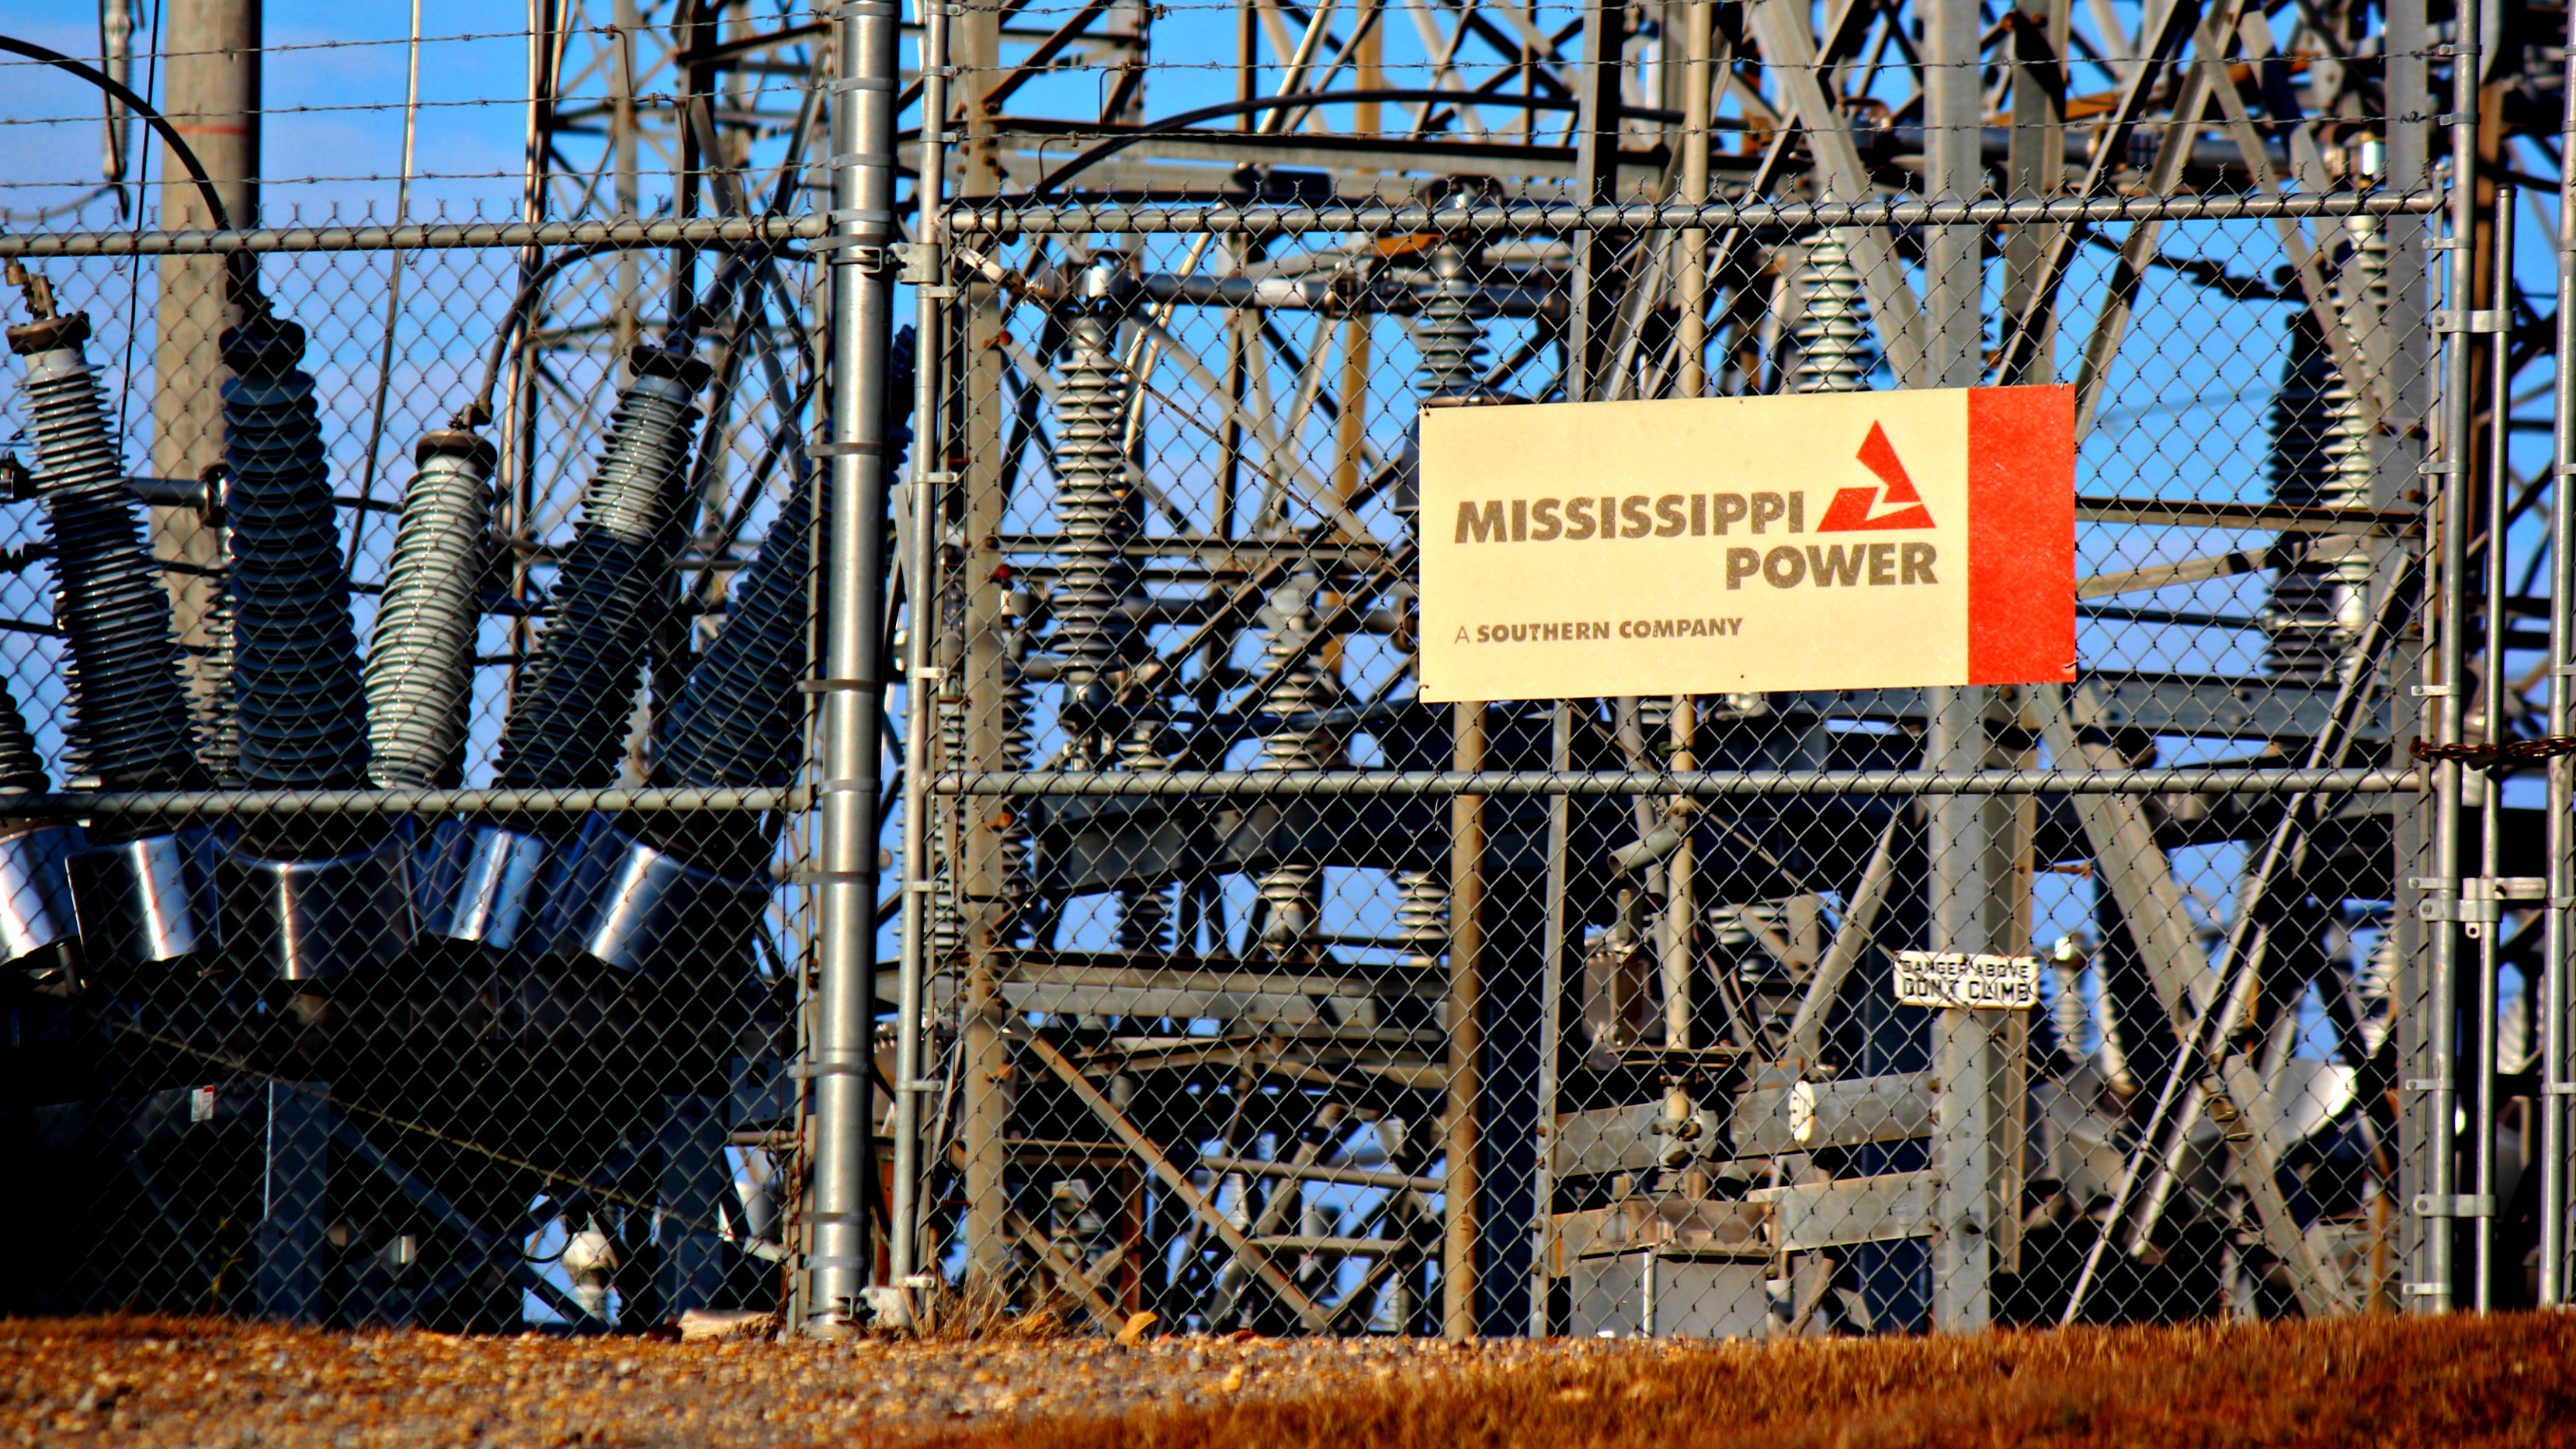 Mississippi power sign